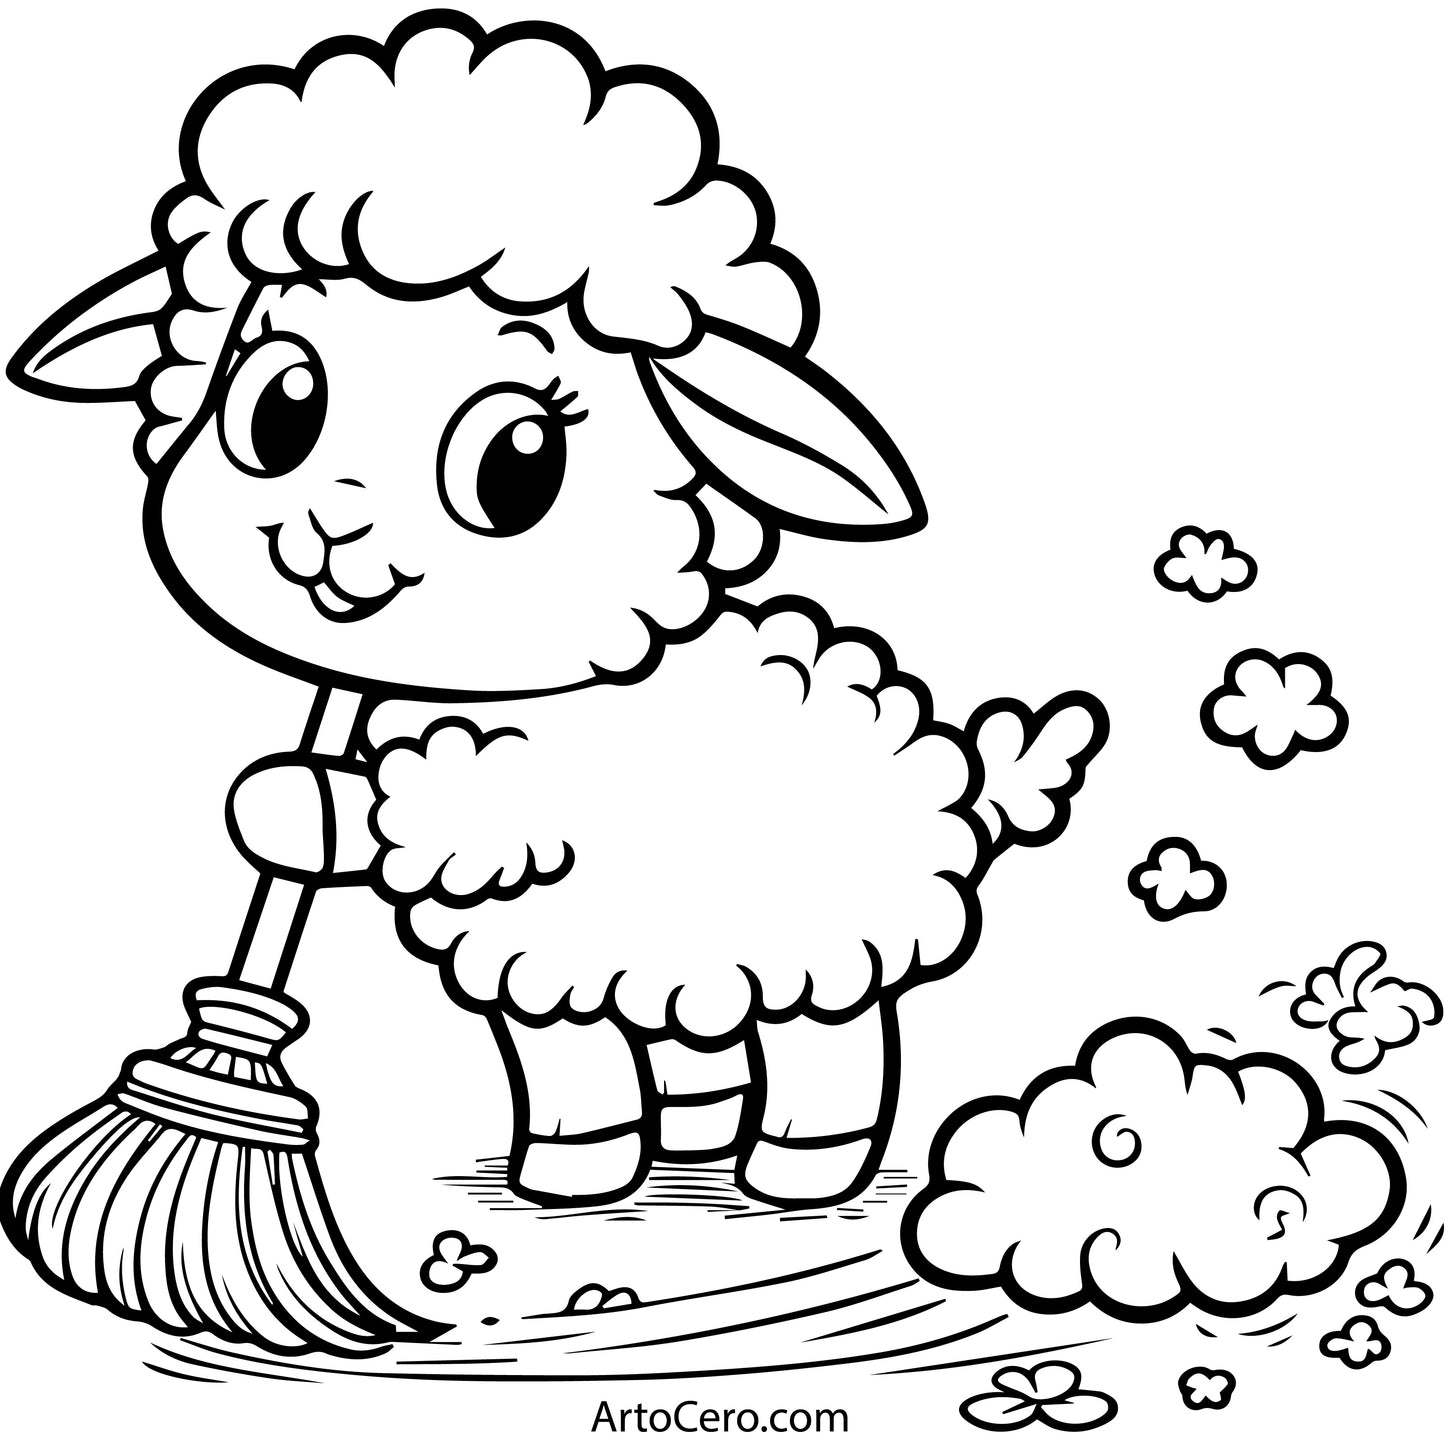 Sheep Coloring Digital Book Vol.1 - ArtoCero.com